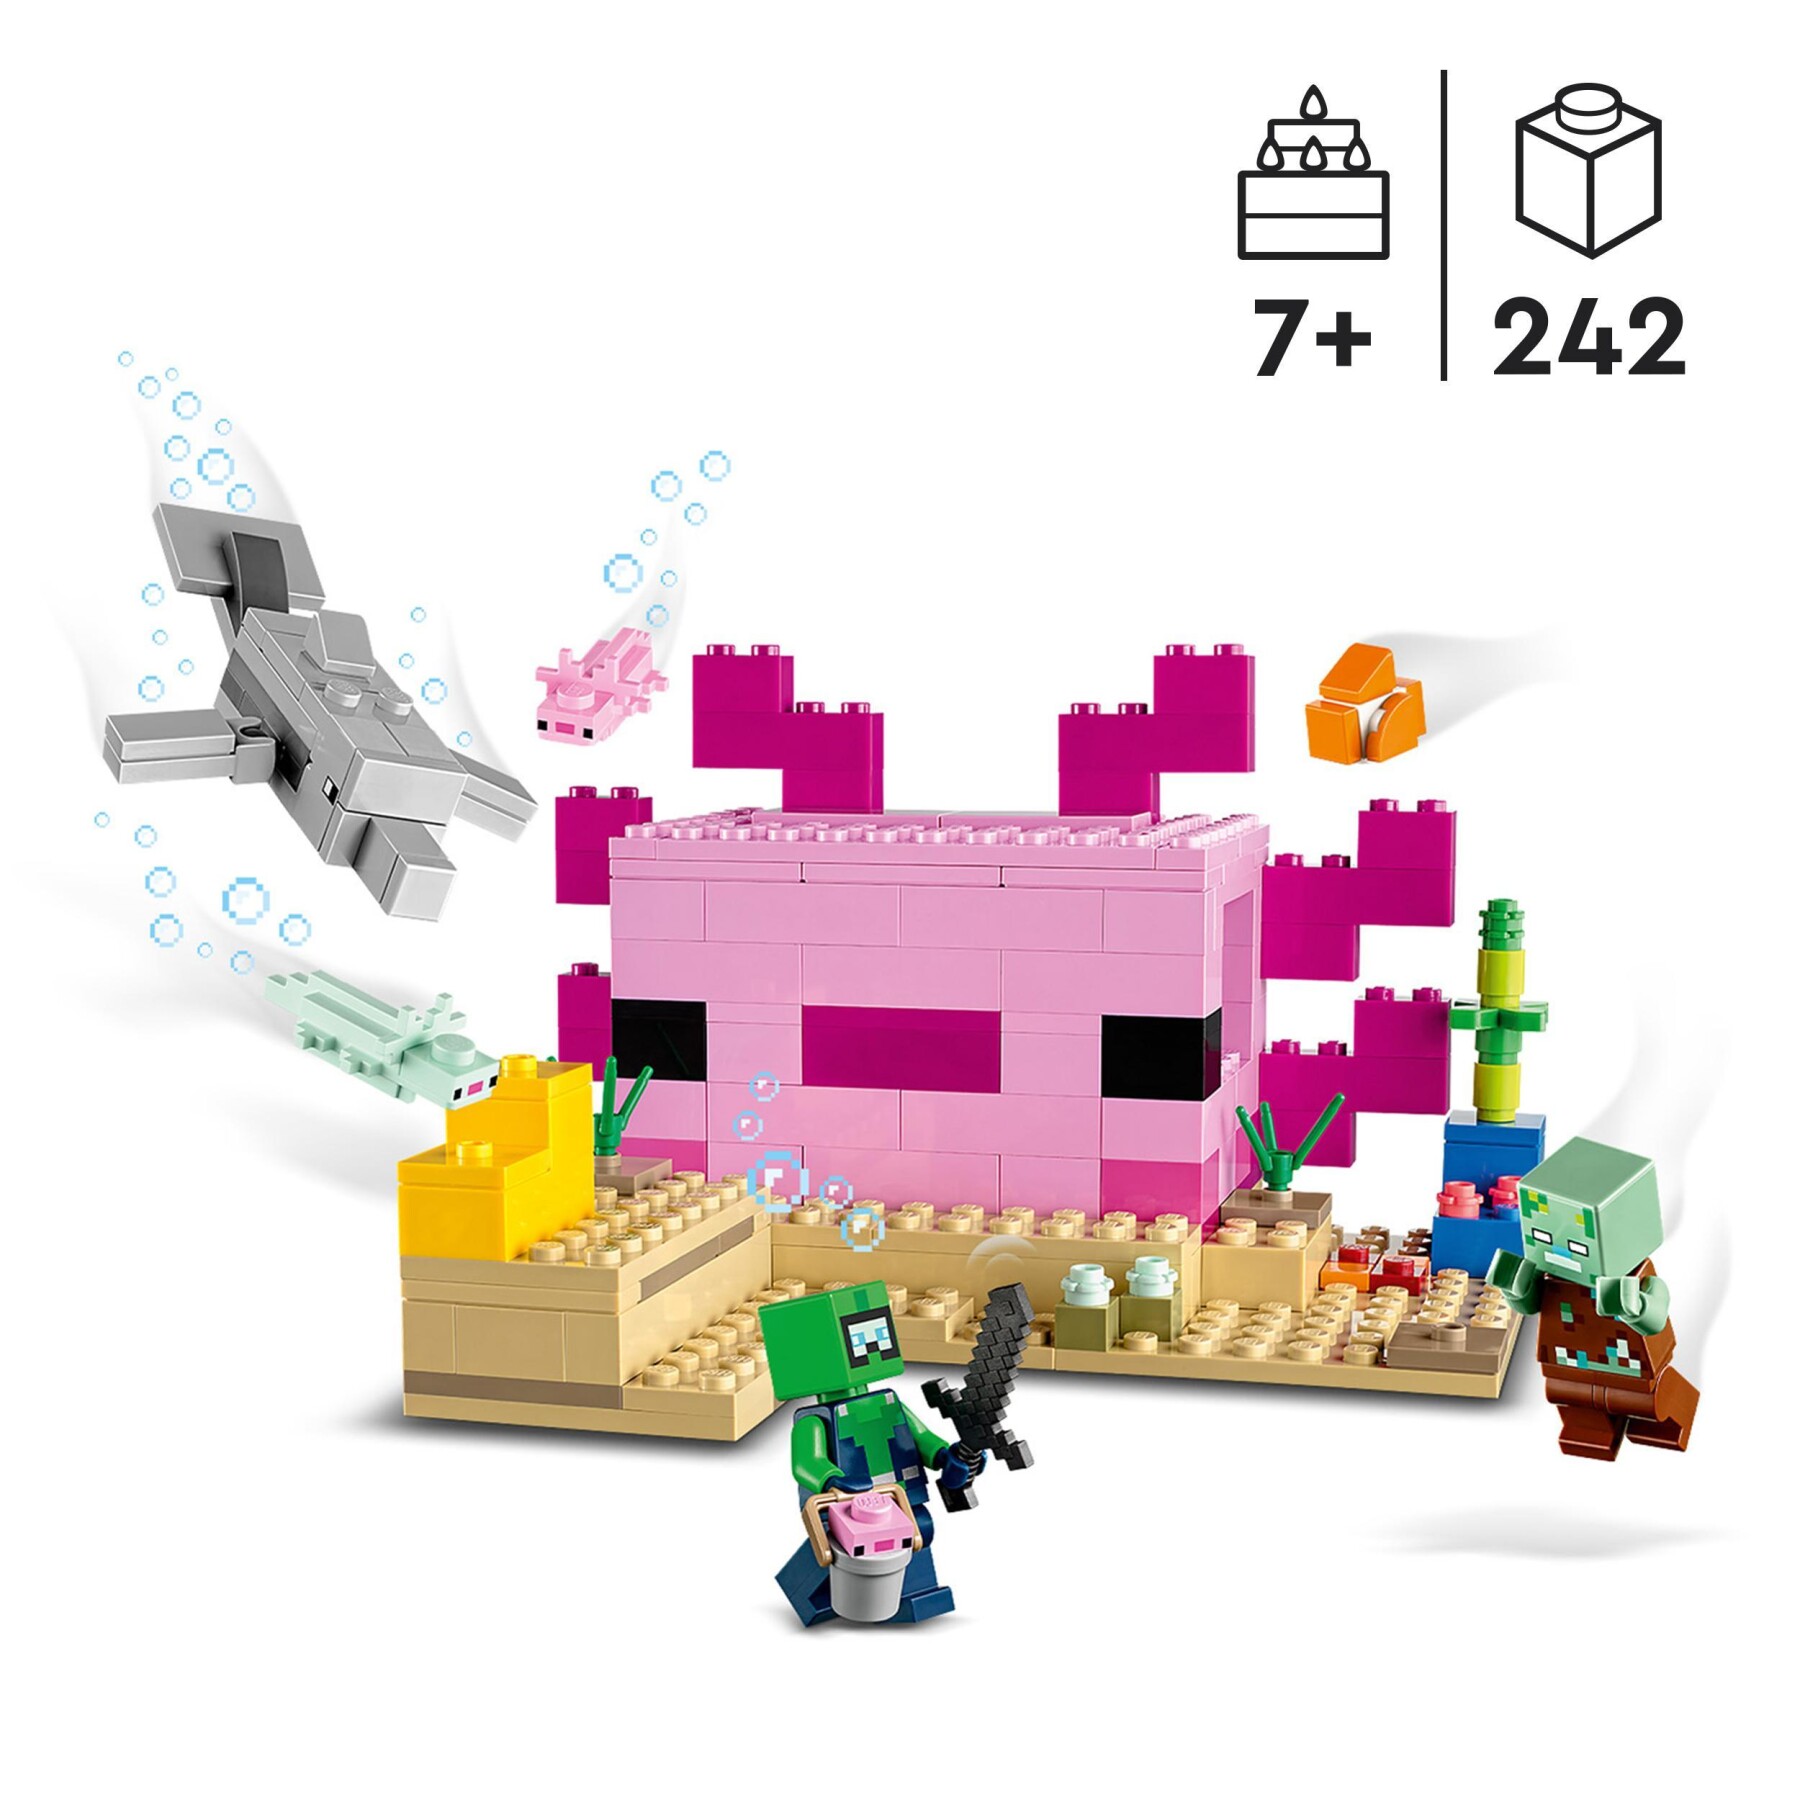 Lego minecraft 21247 la casa dell’axolotl, base subacquea rosa con esploratore subacqueo, zombie, per bambini da 7 anni - MINECRAFT